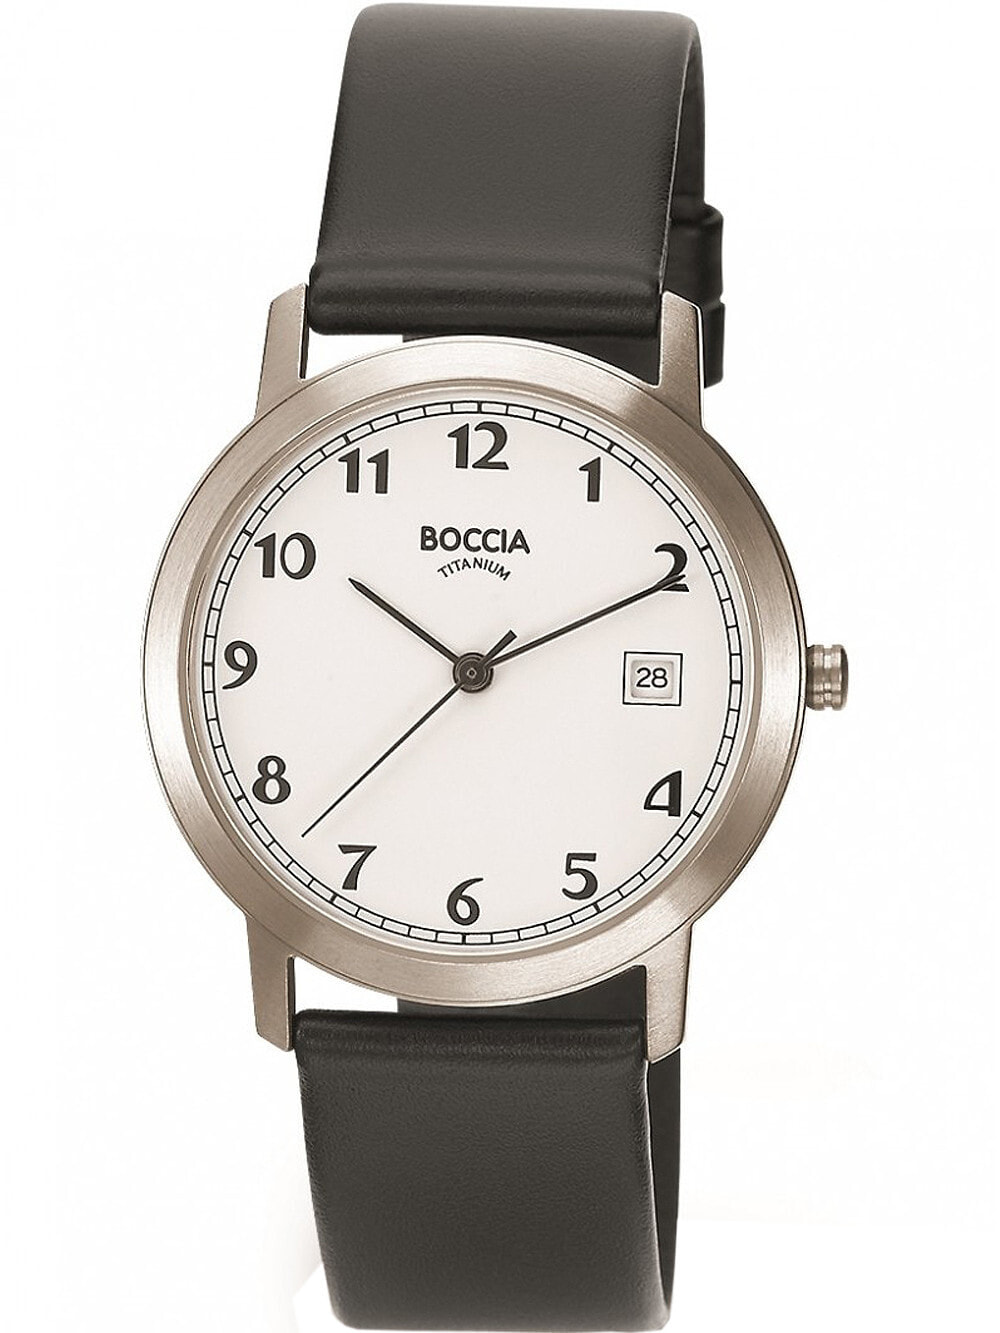 Мужские наручные часы с черным силиконовым ремешком Boccia 3617-01 watch titanium 35mm 5ATM